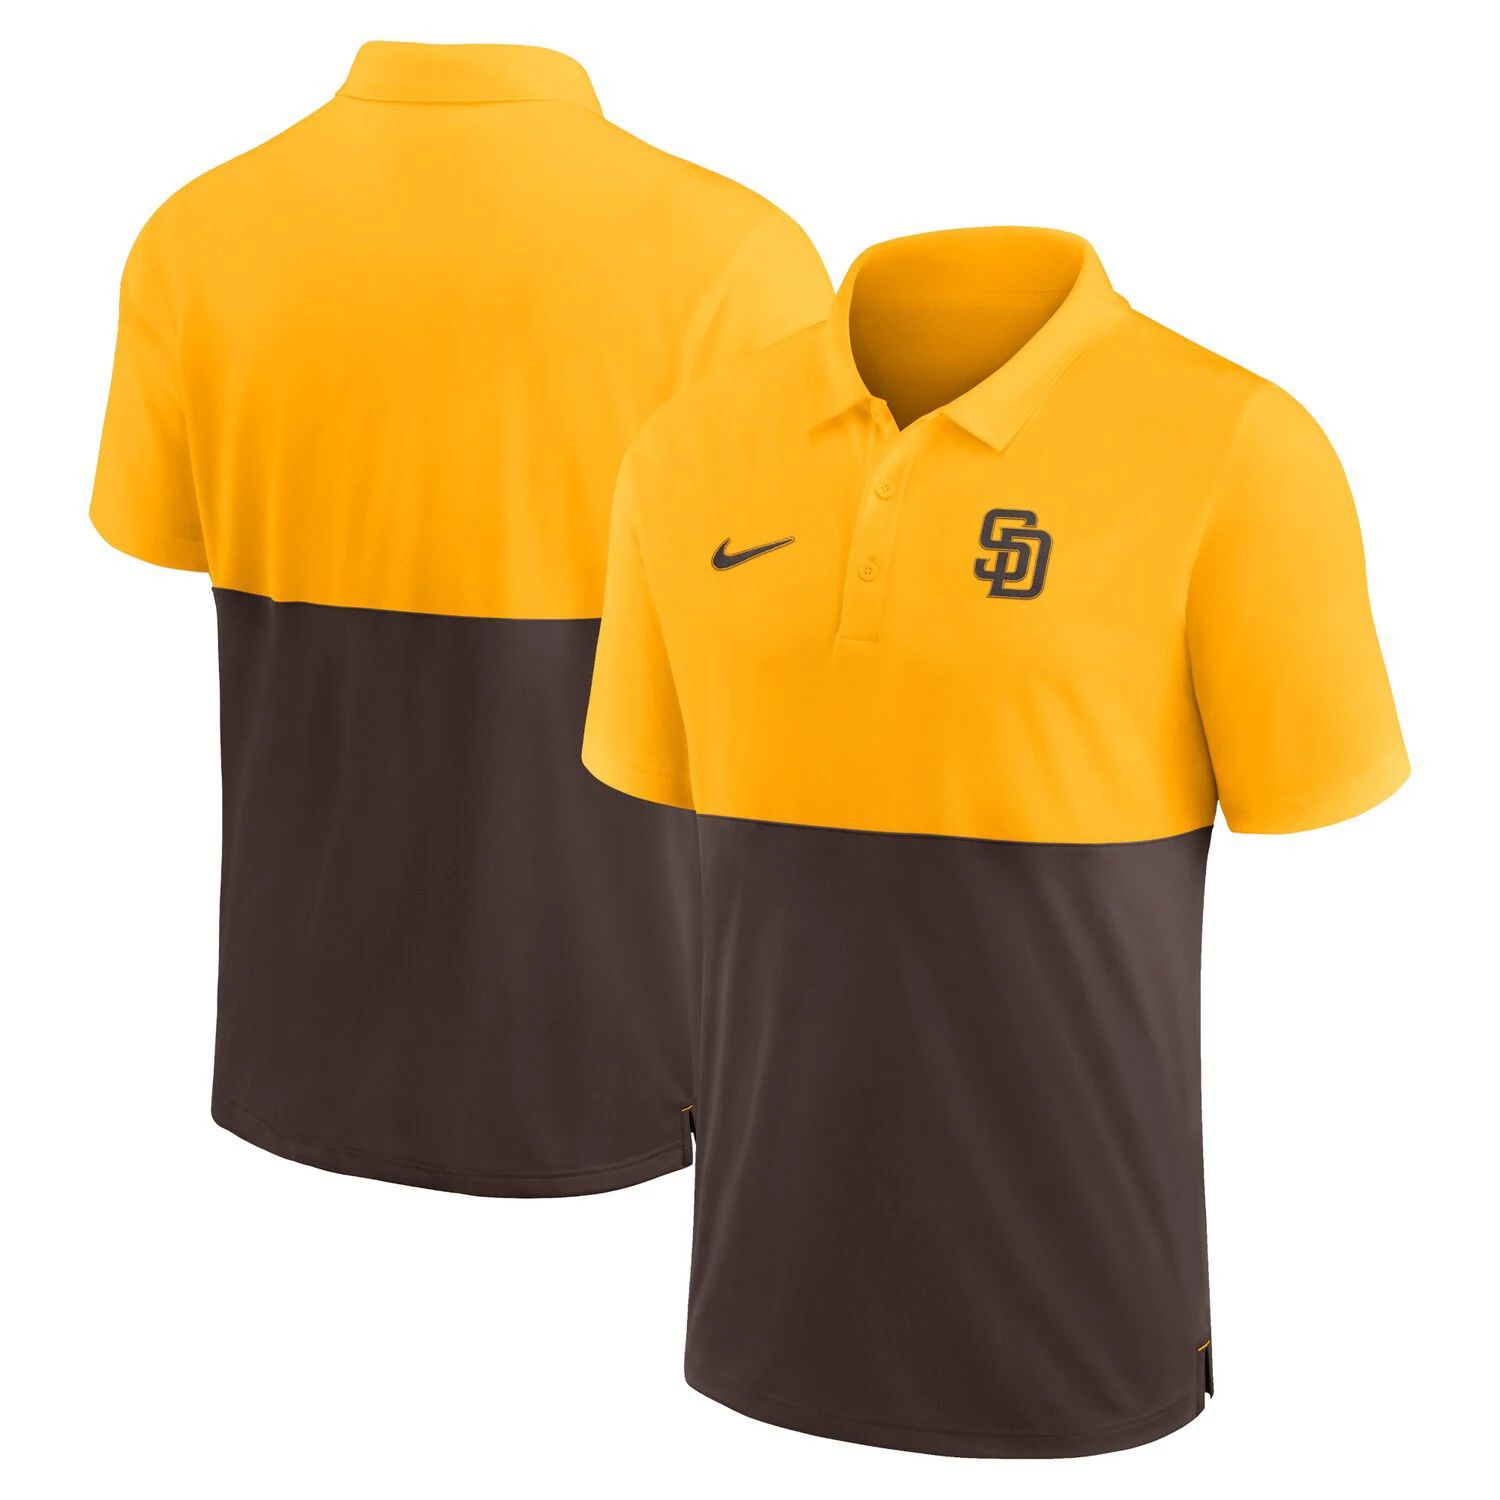 Мужская полосатая рубашка-поло San Diego Padres Team золотистого/коричневого цвета Nike